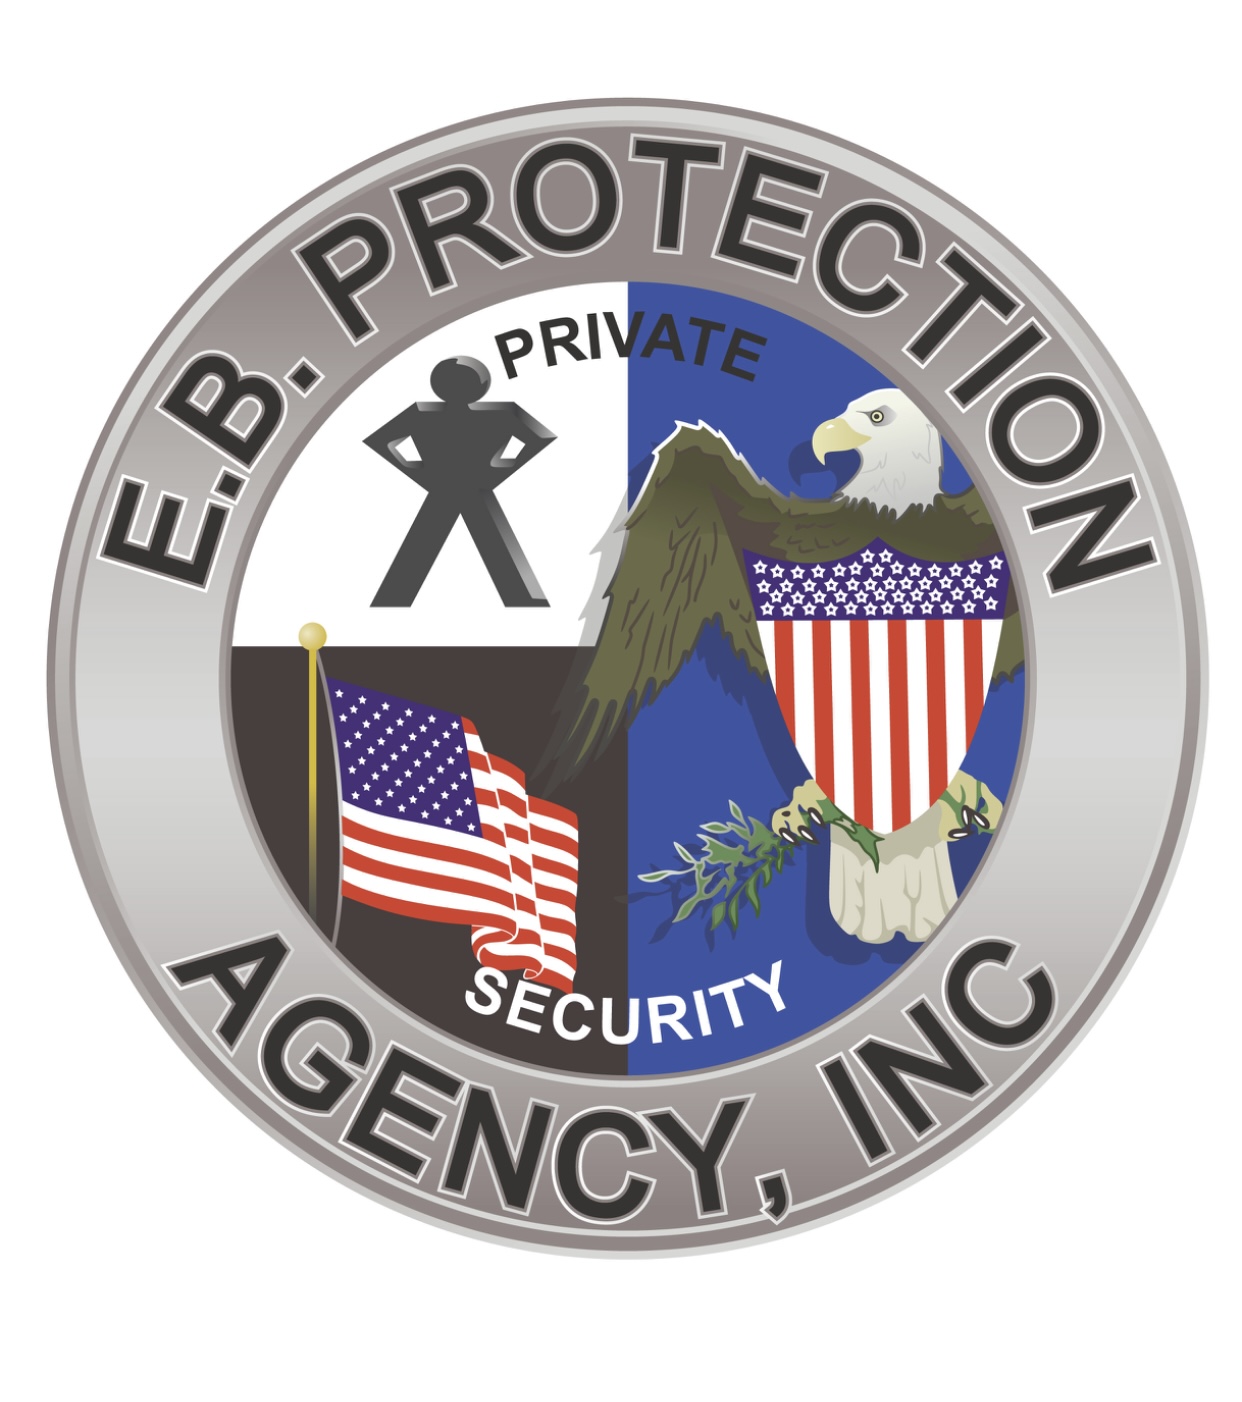 EBprotection